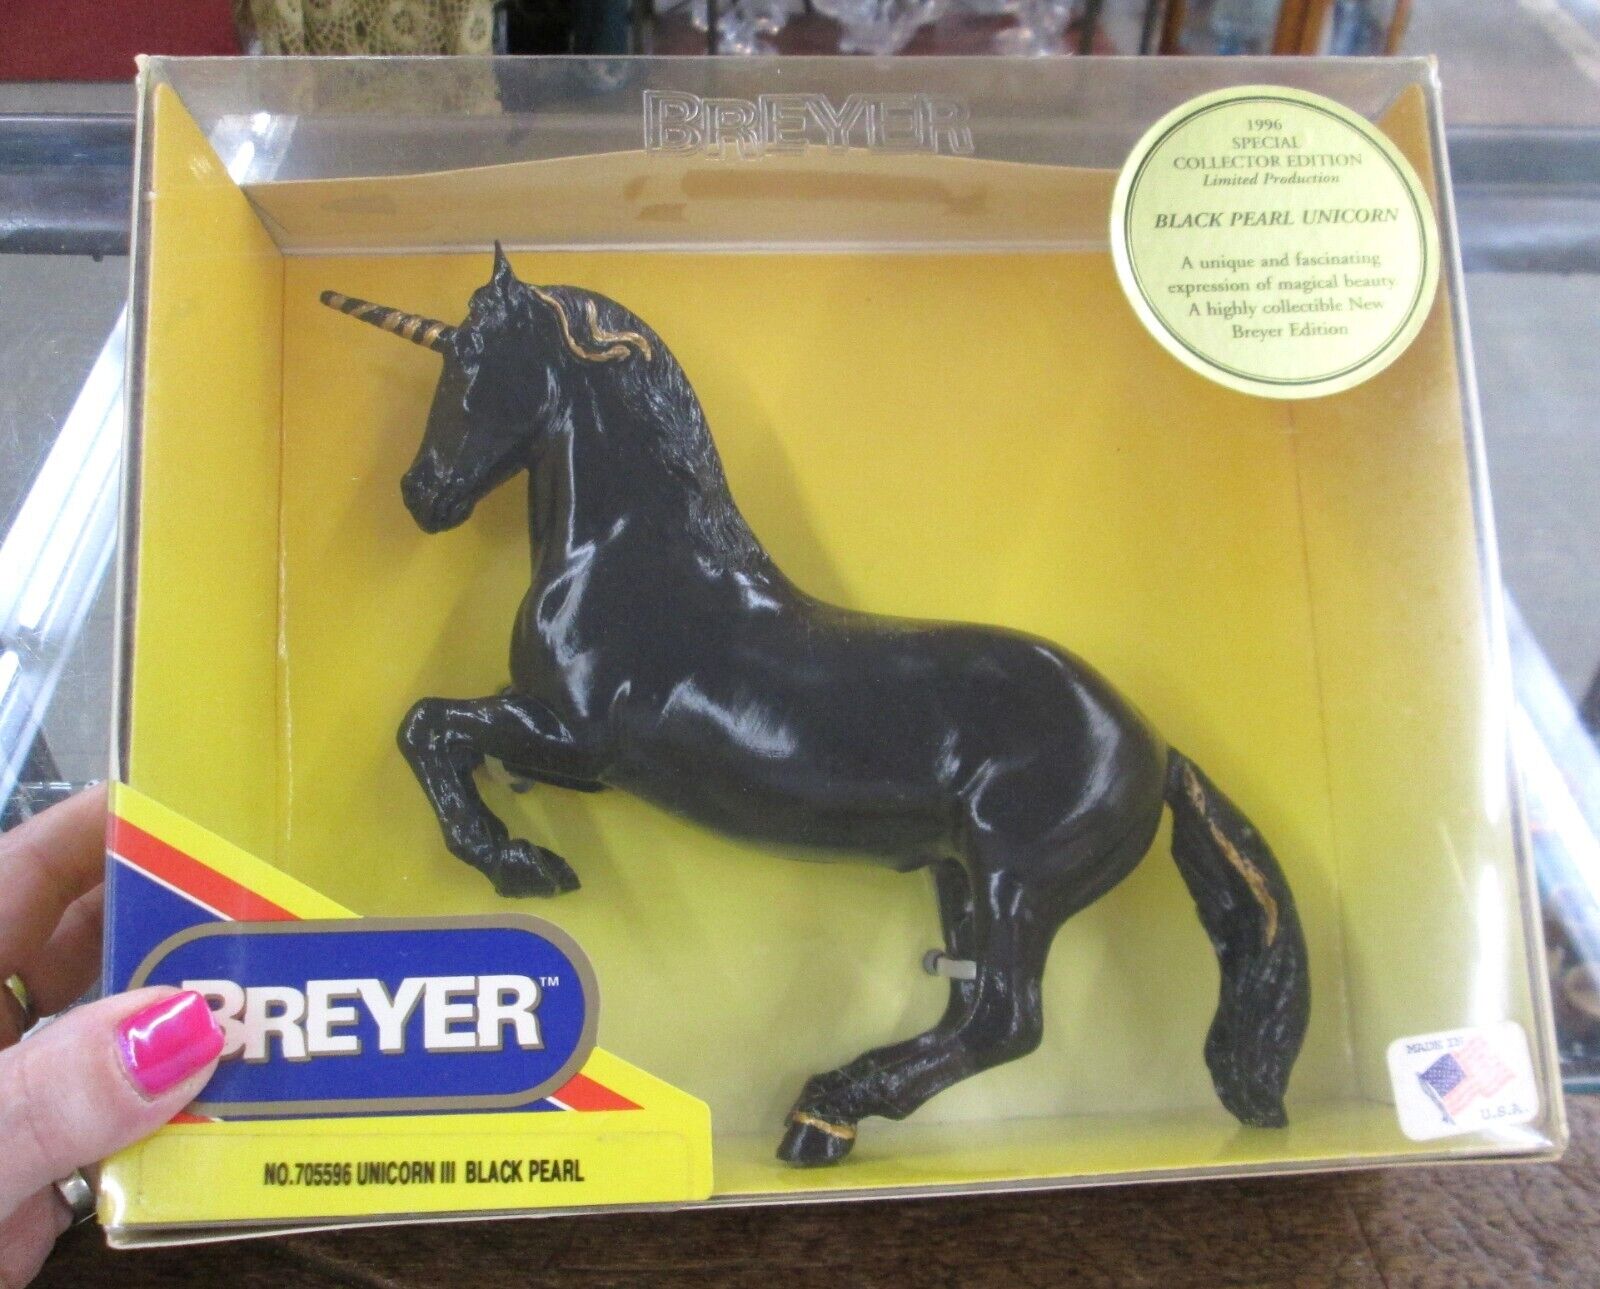 1996 Breyer No 705596 Unicorn III Black Pearl NOS Special Collector Edition